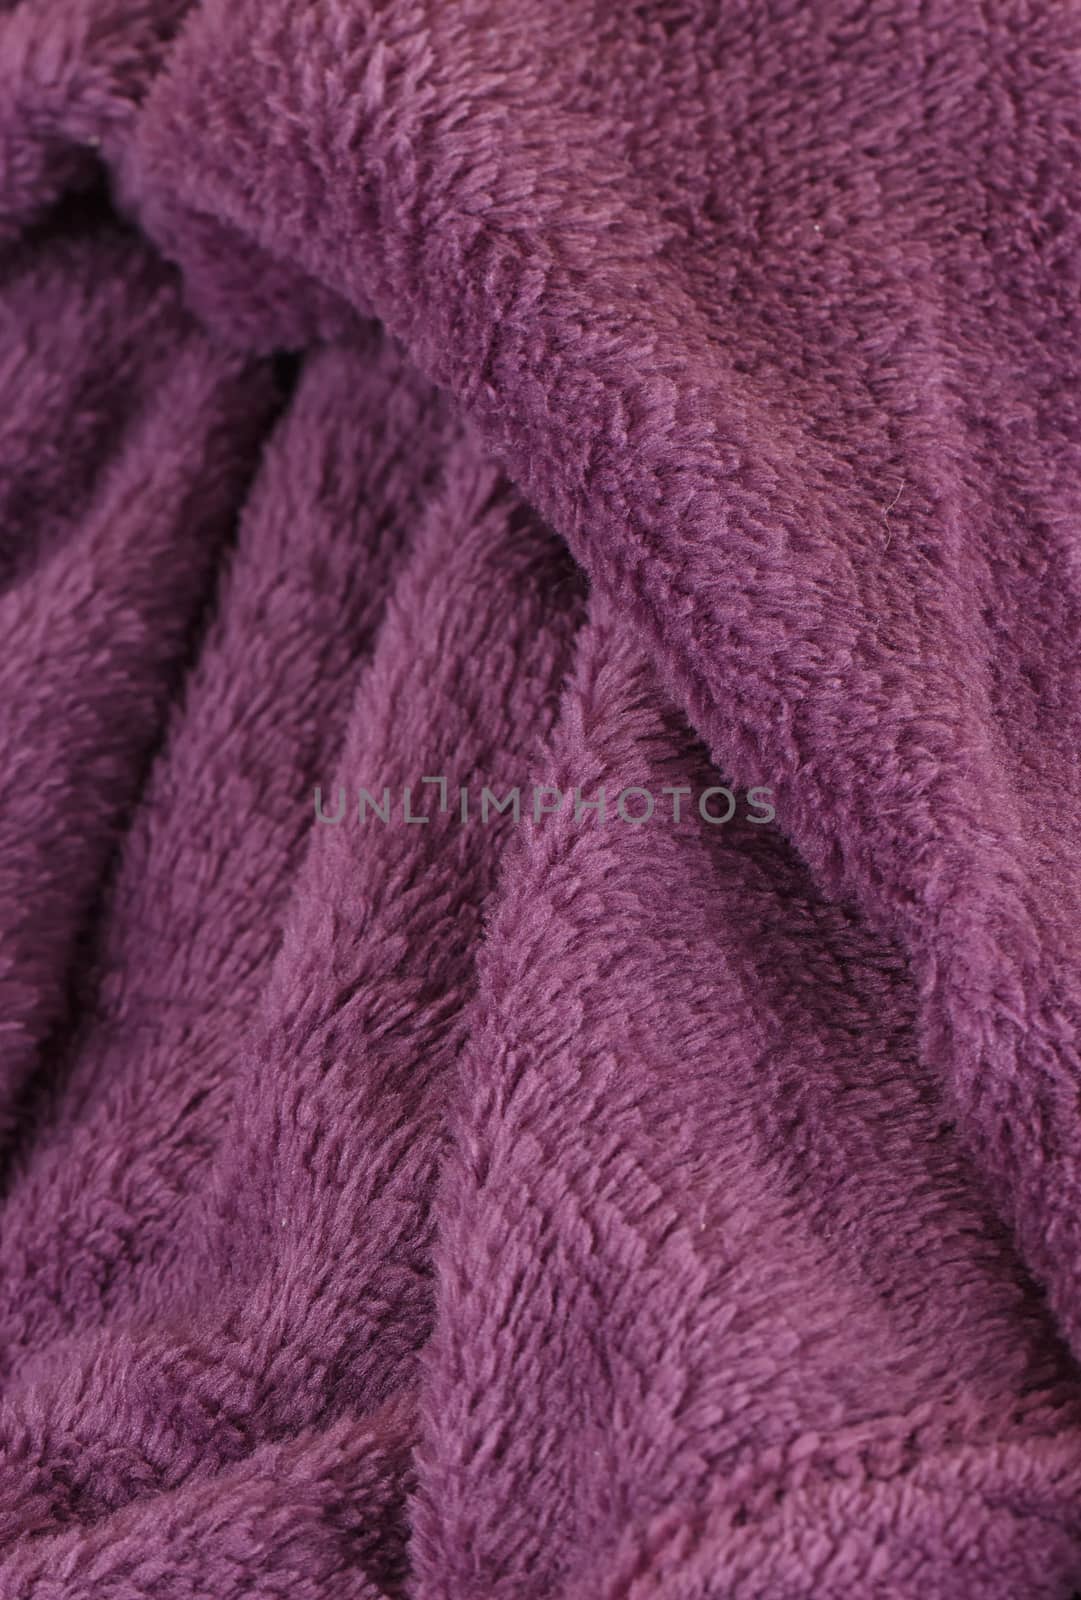 Dark purple bath fluffy towel or blanket